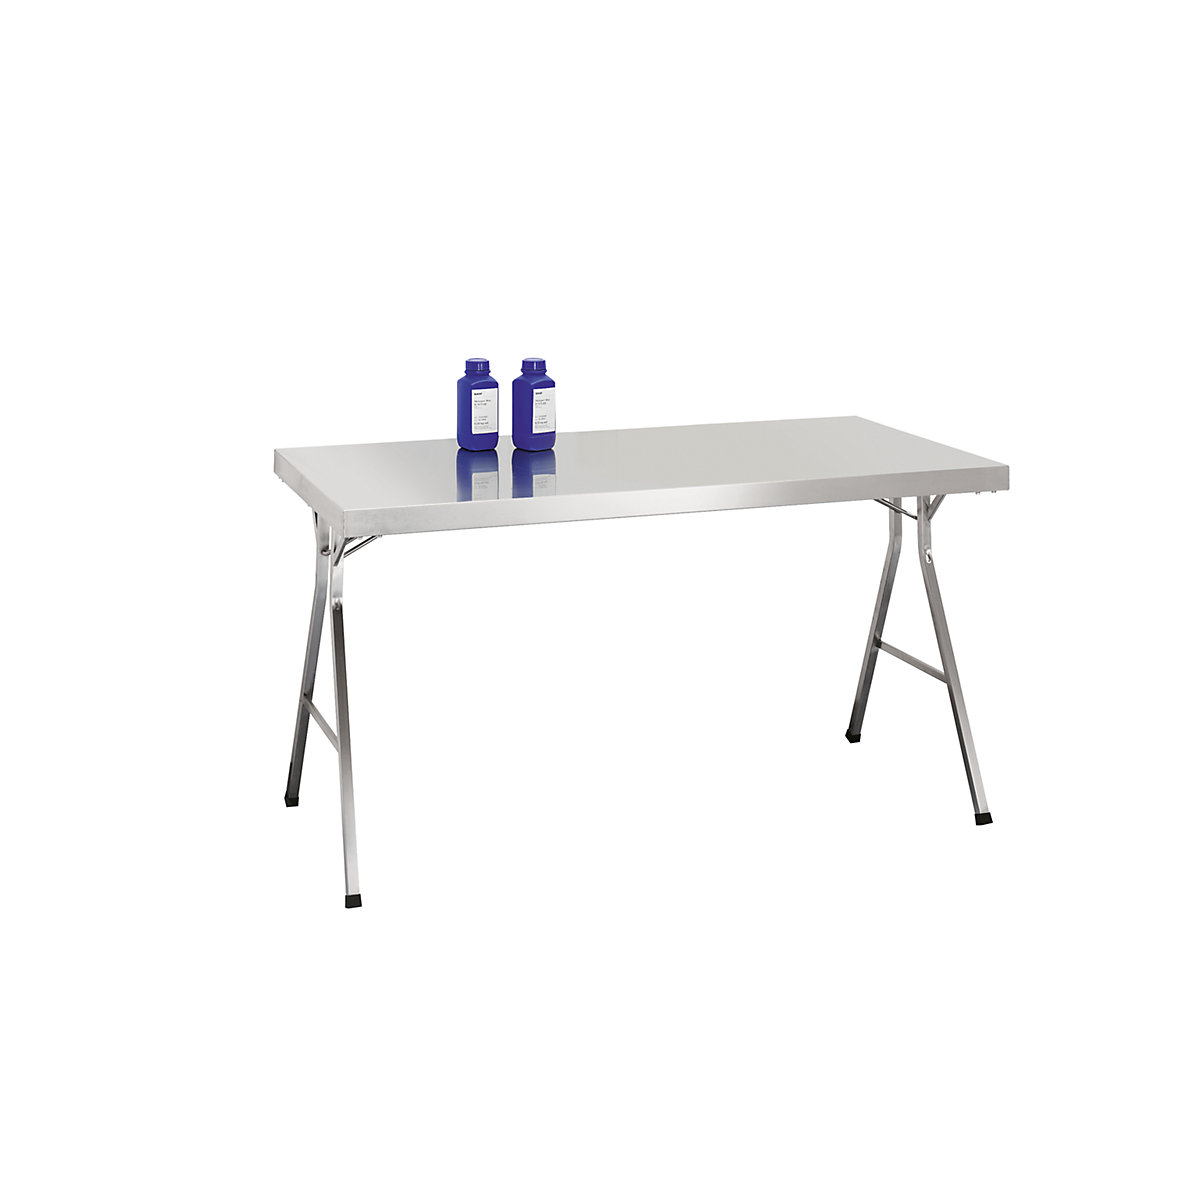 Table pliante en inox: hauteur de travail 850 mm